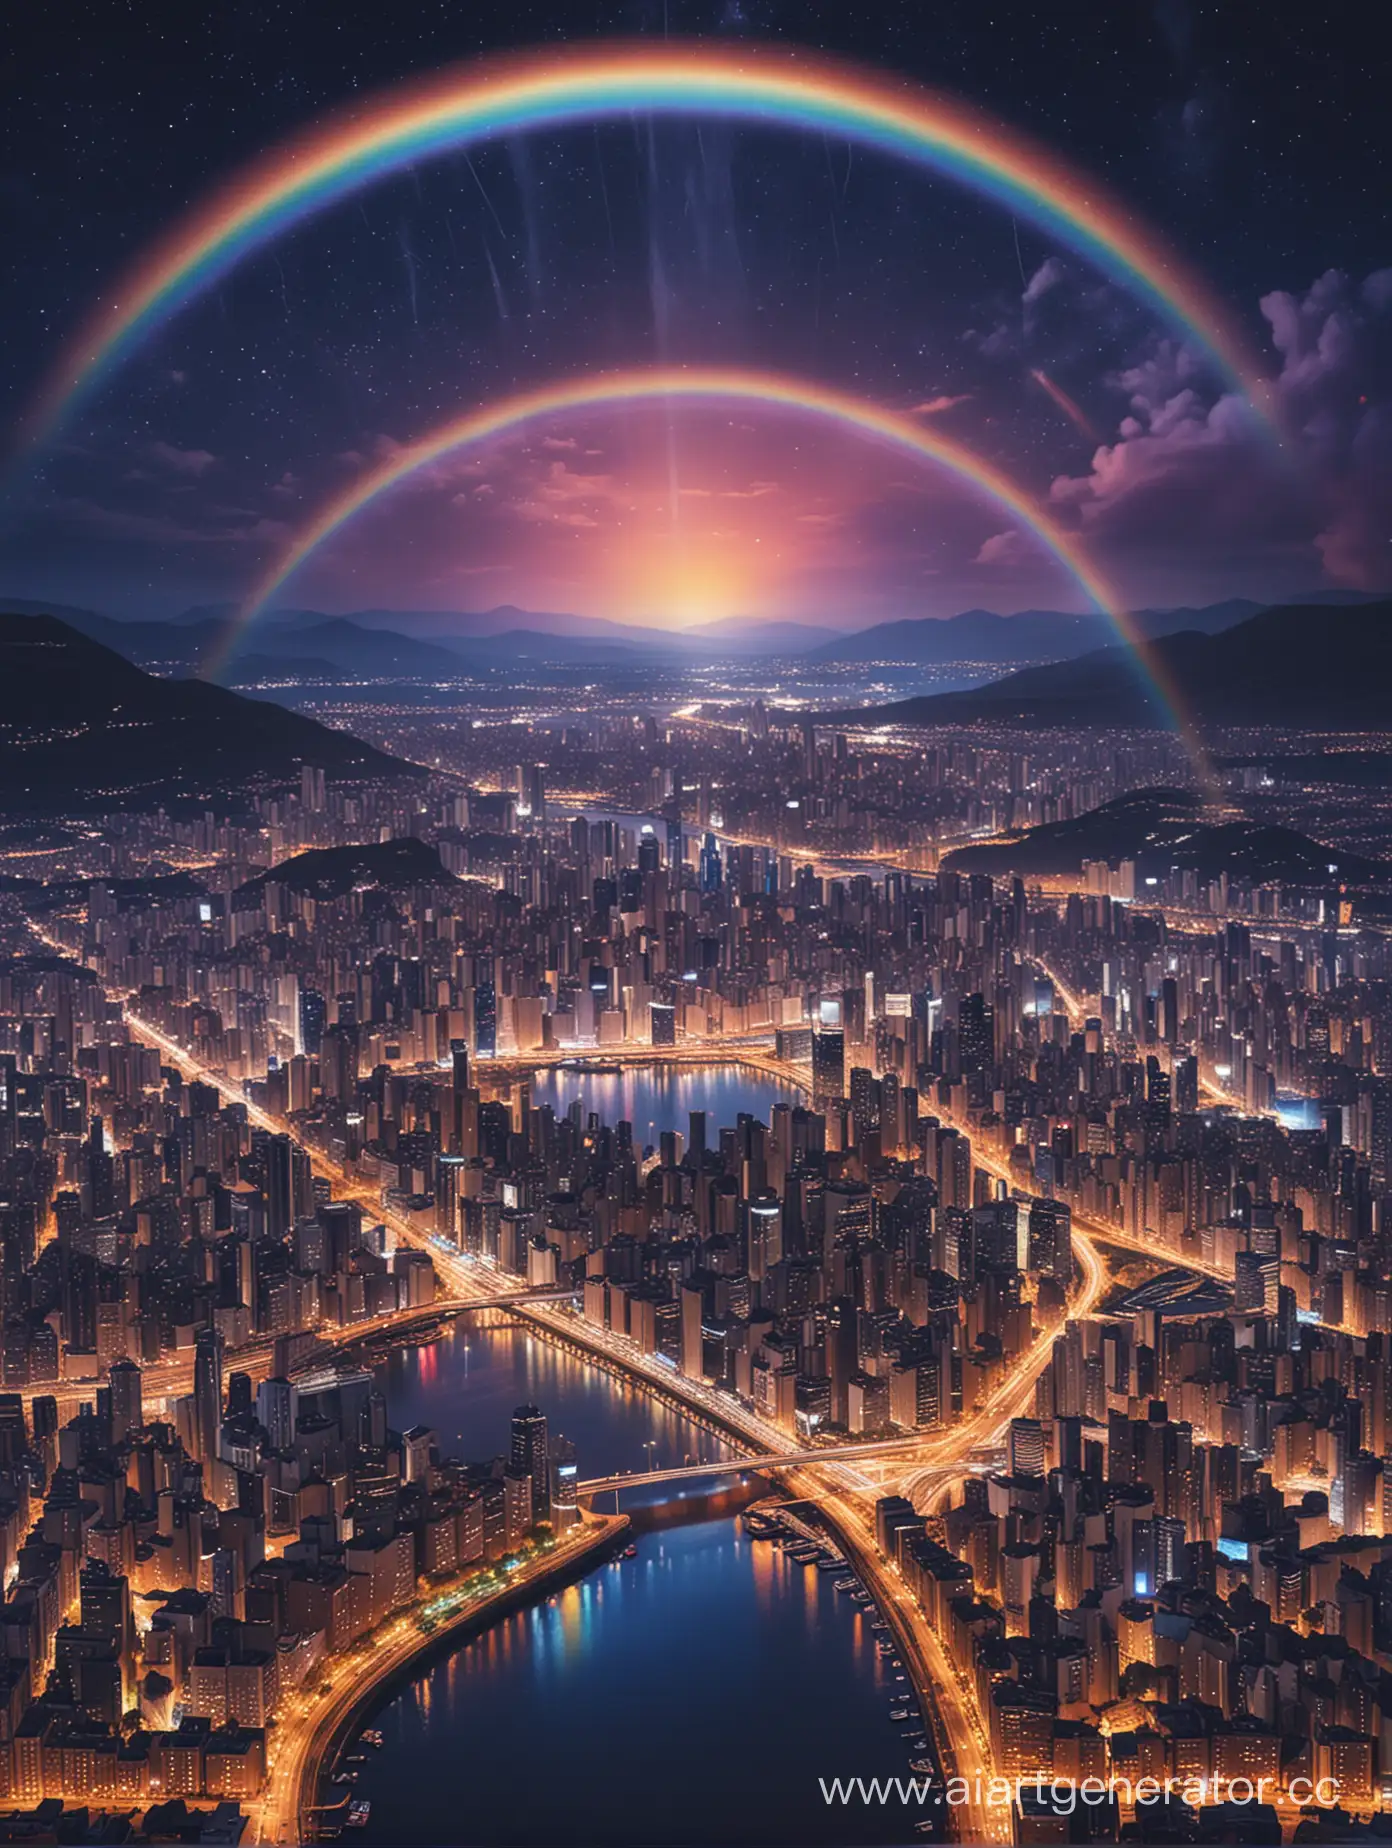 Vibrant-Rainbow-Night-Cityscape-Illuminated-with-Neon-Lights